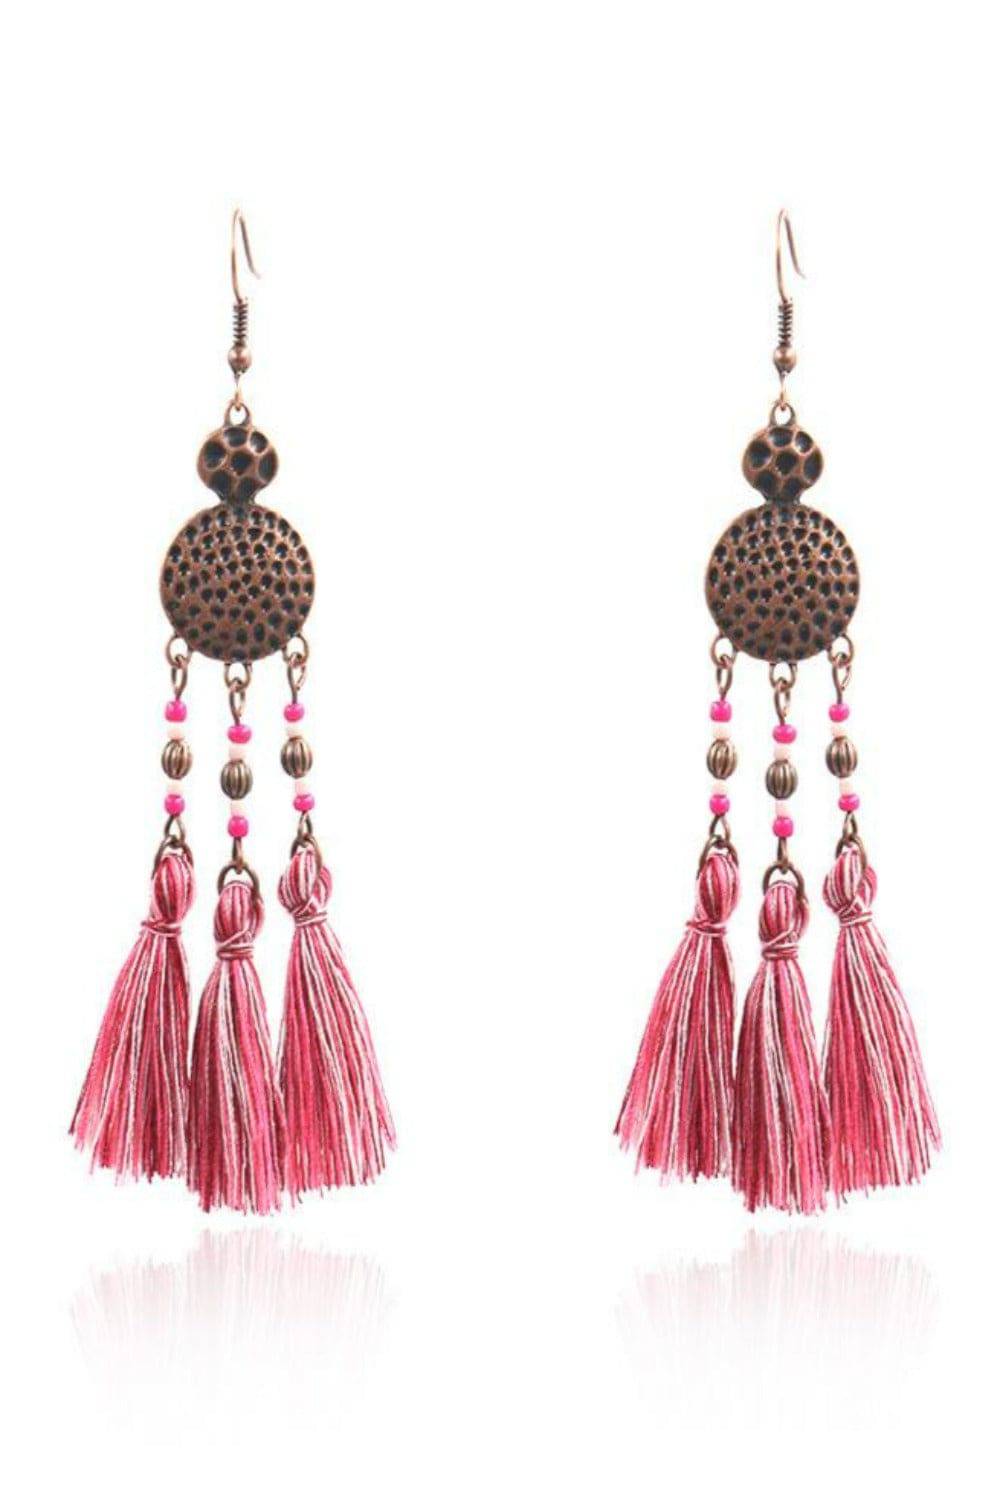 Woven Silk Geometric Fan Tassel Bohemian Earrings - TGC Boutique - Dangle Earrings